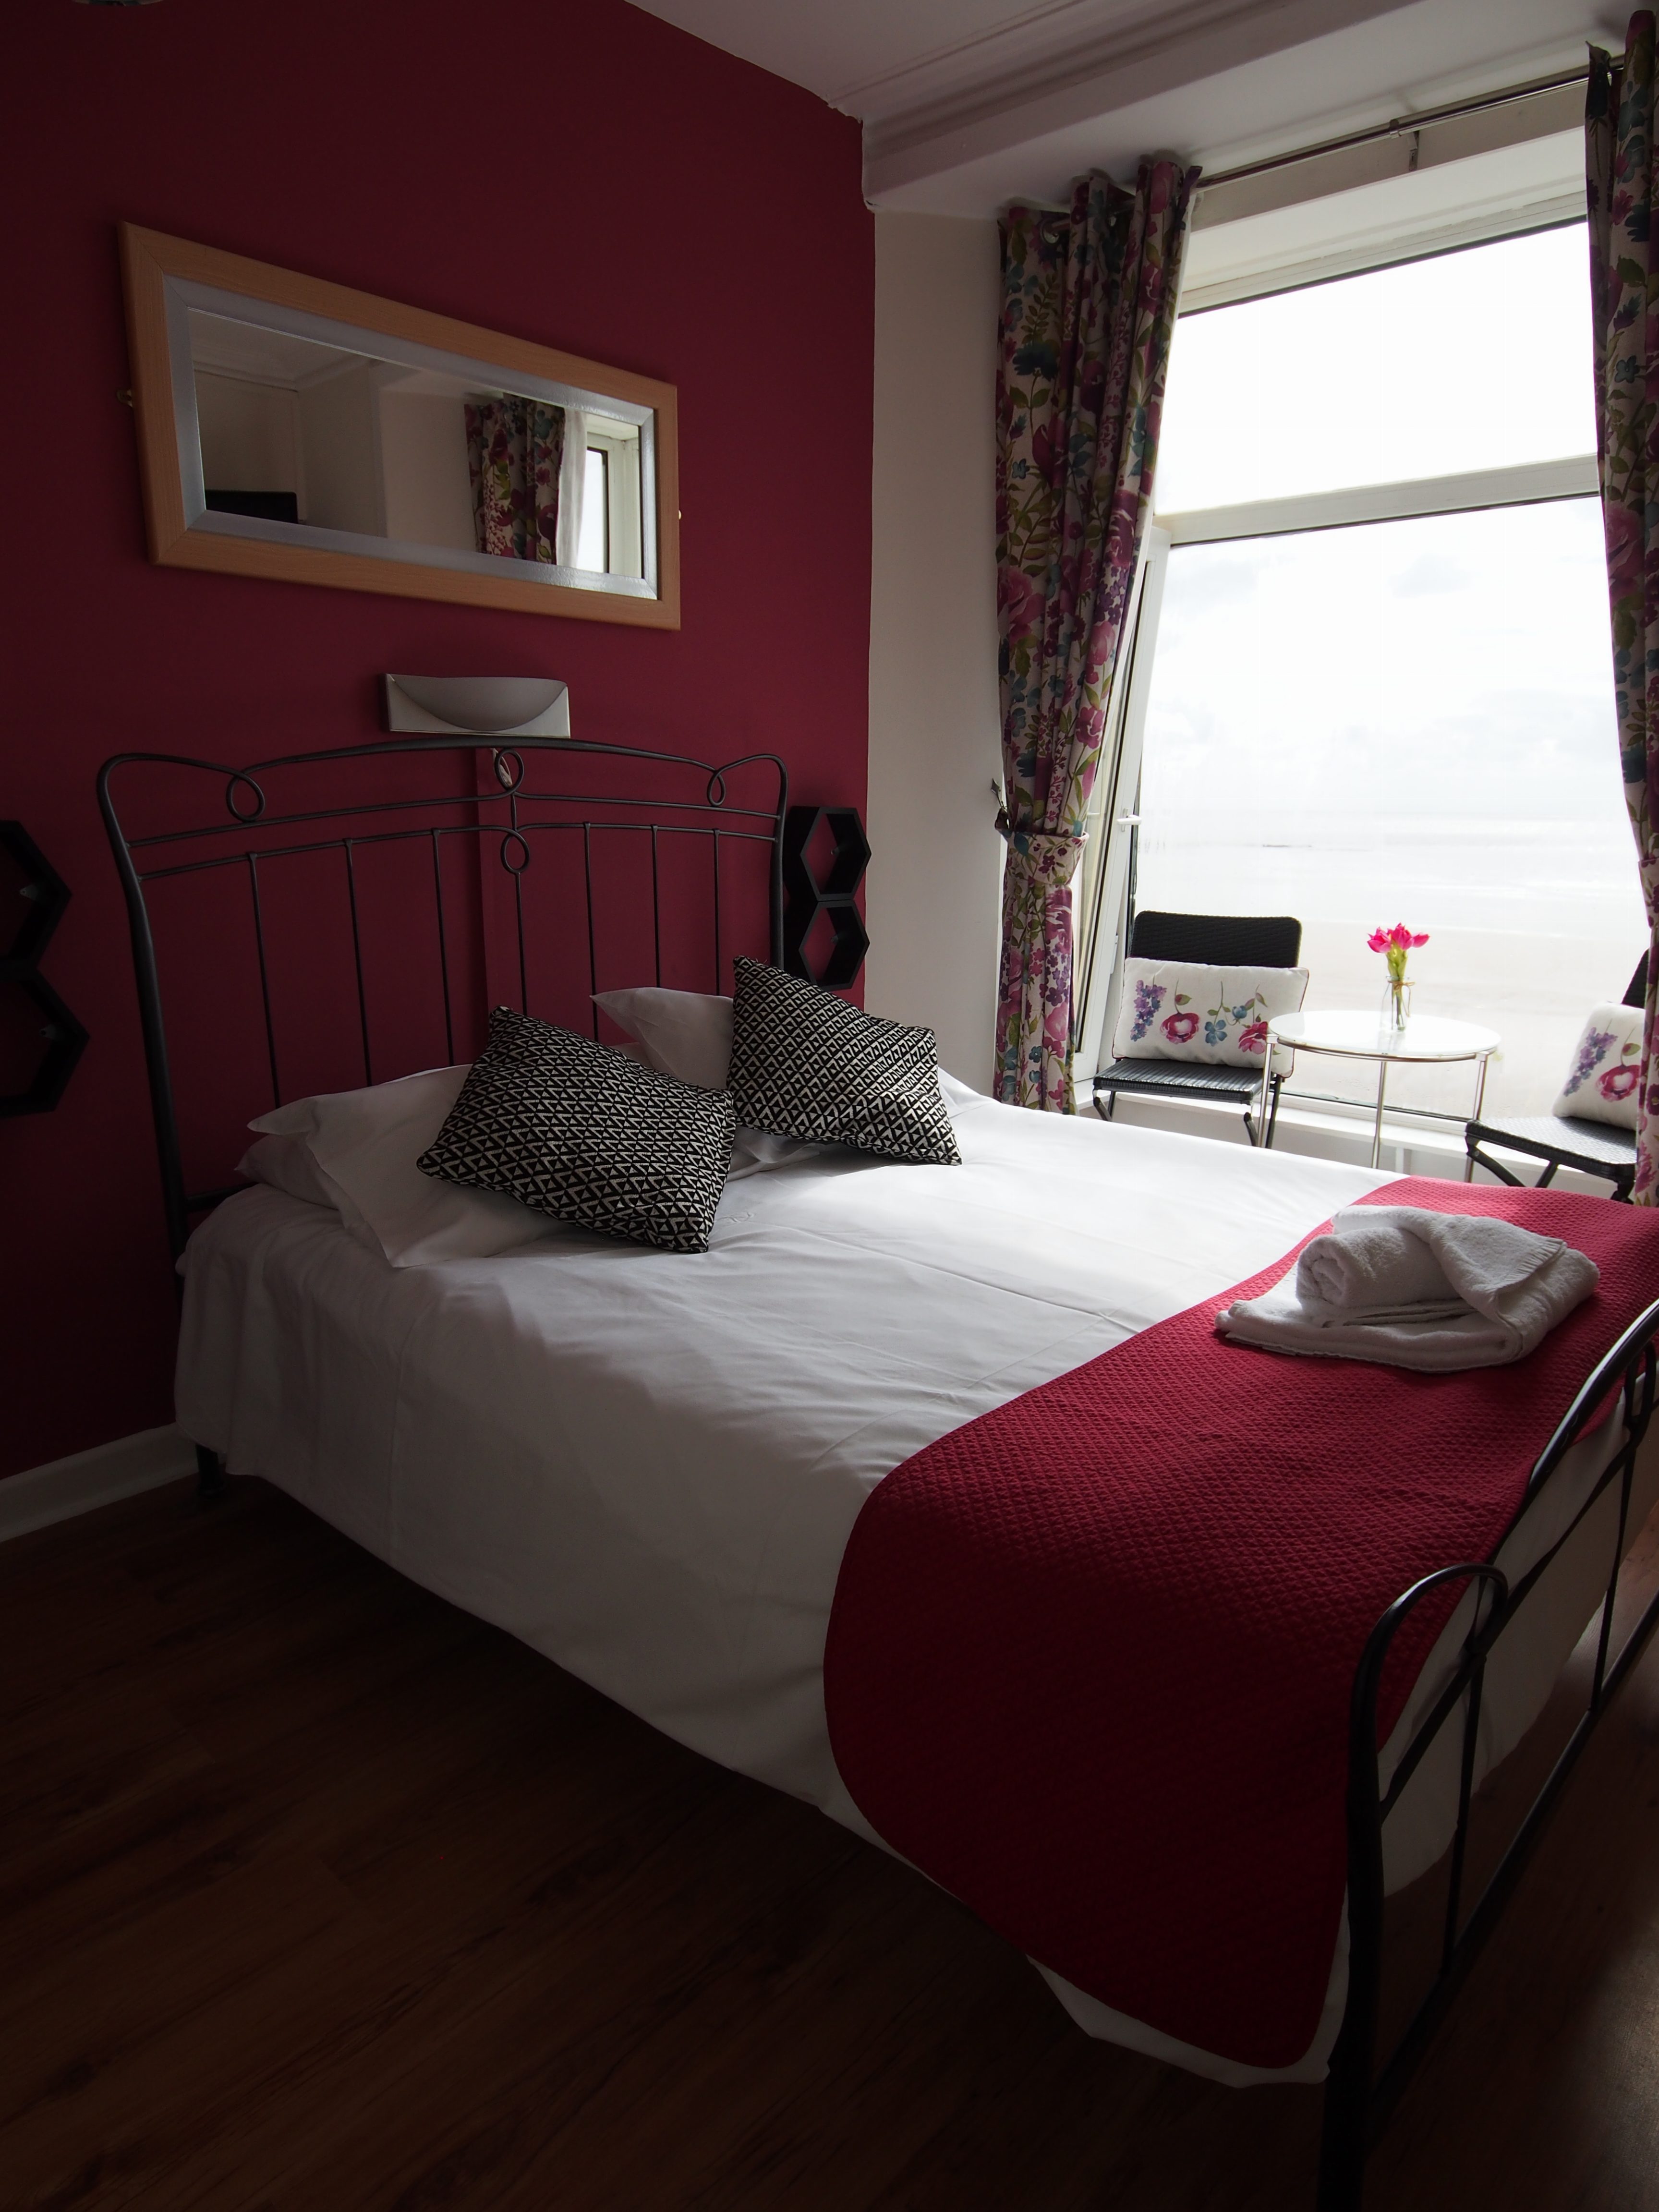 Double room with en-suite bathroom - bed and breakfast Swansea